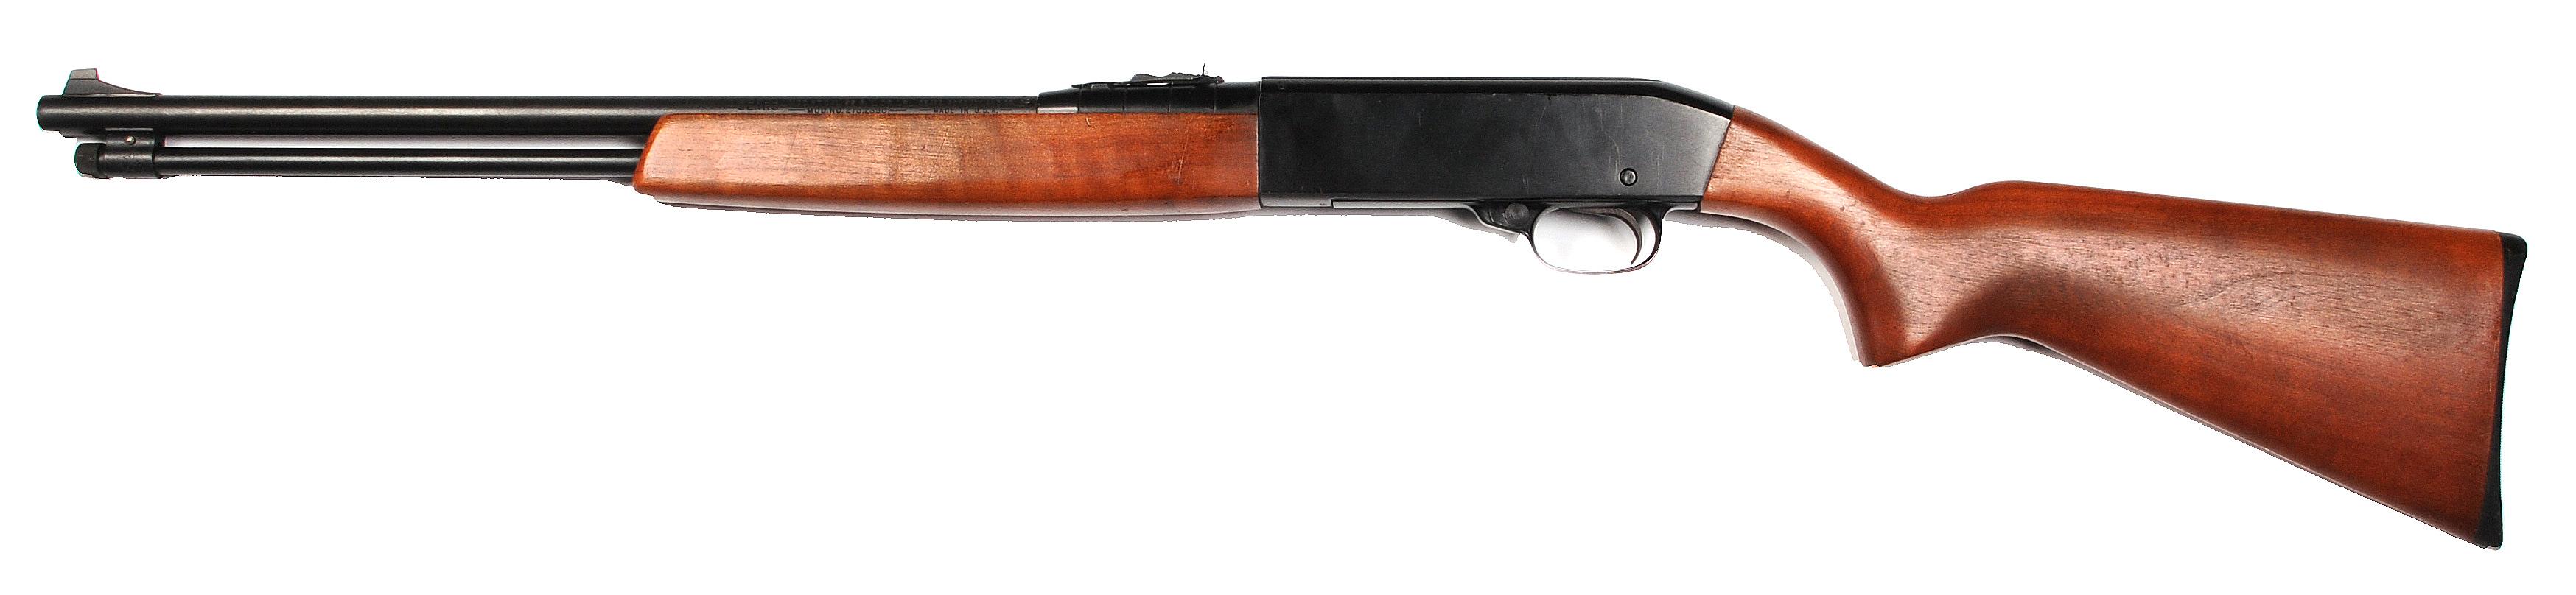 Sears Model 3T .22 S,L,LR Semi-Automatic Rifle - FFL #109006 (LAD 1)